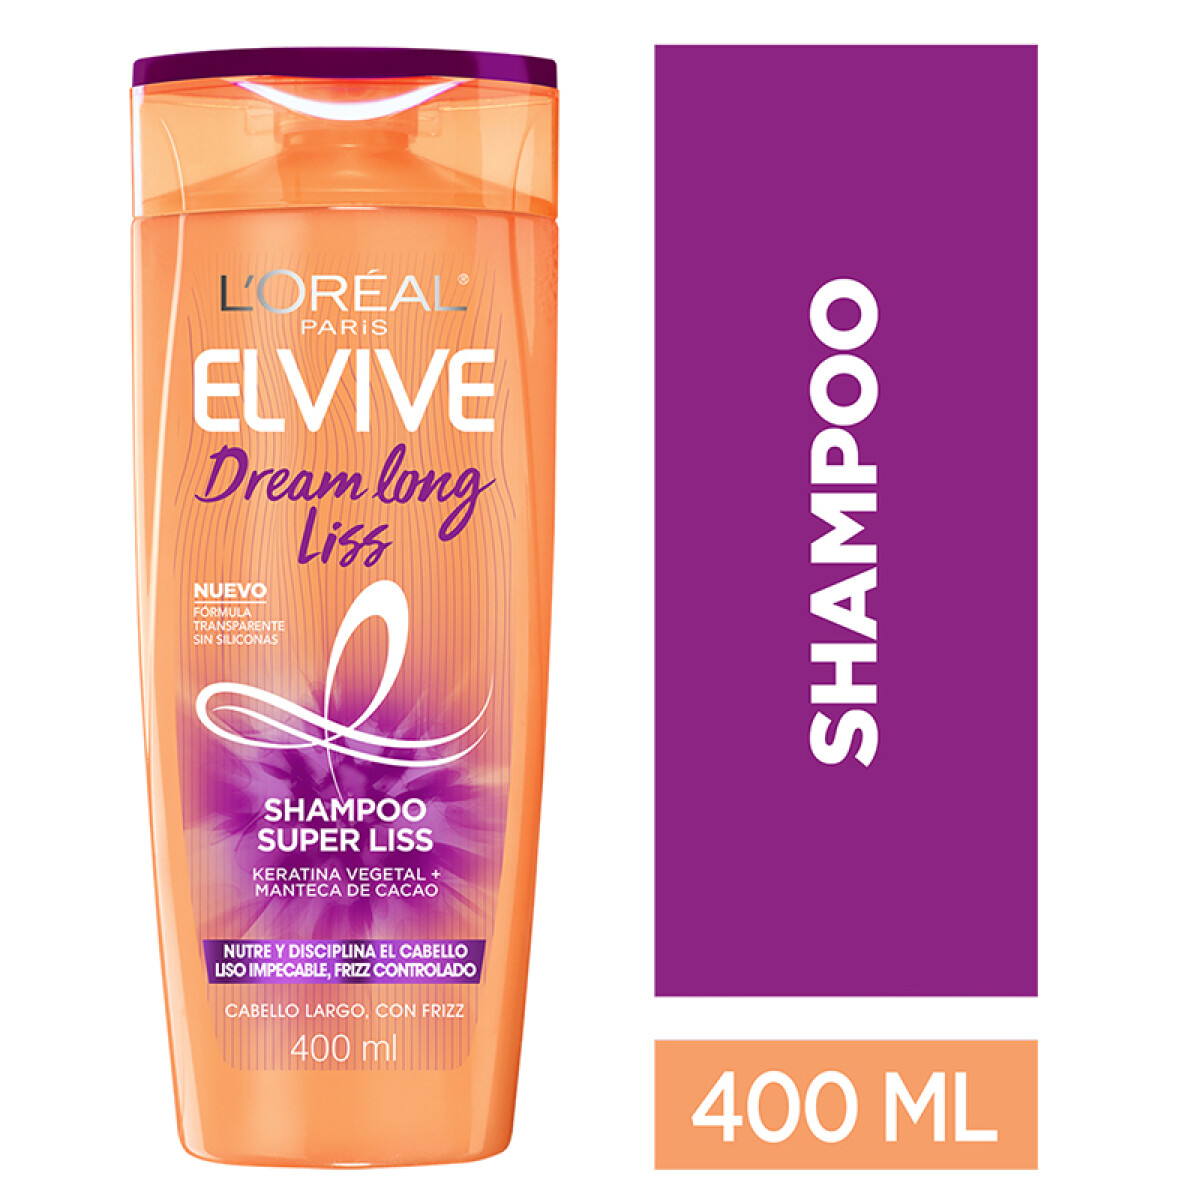 L´oréal Elvive shampoo - Dream long liss 370 ml 